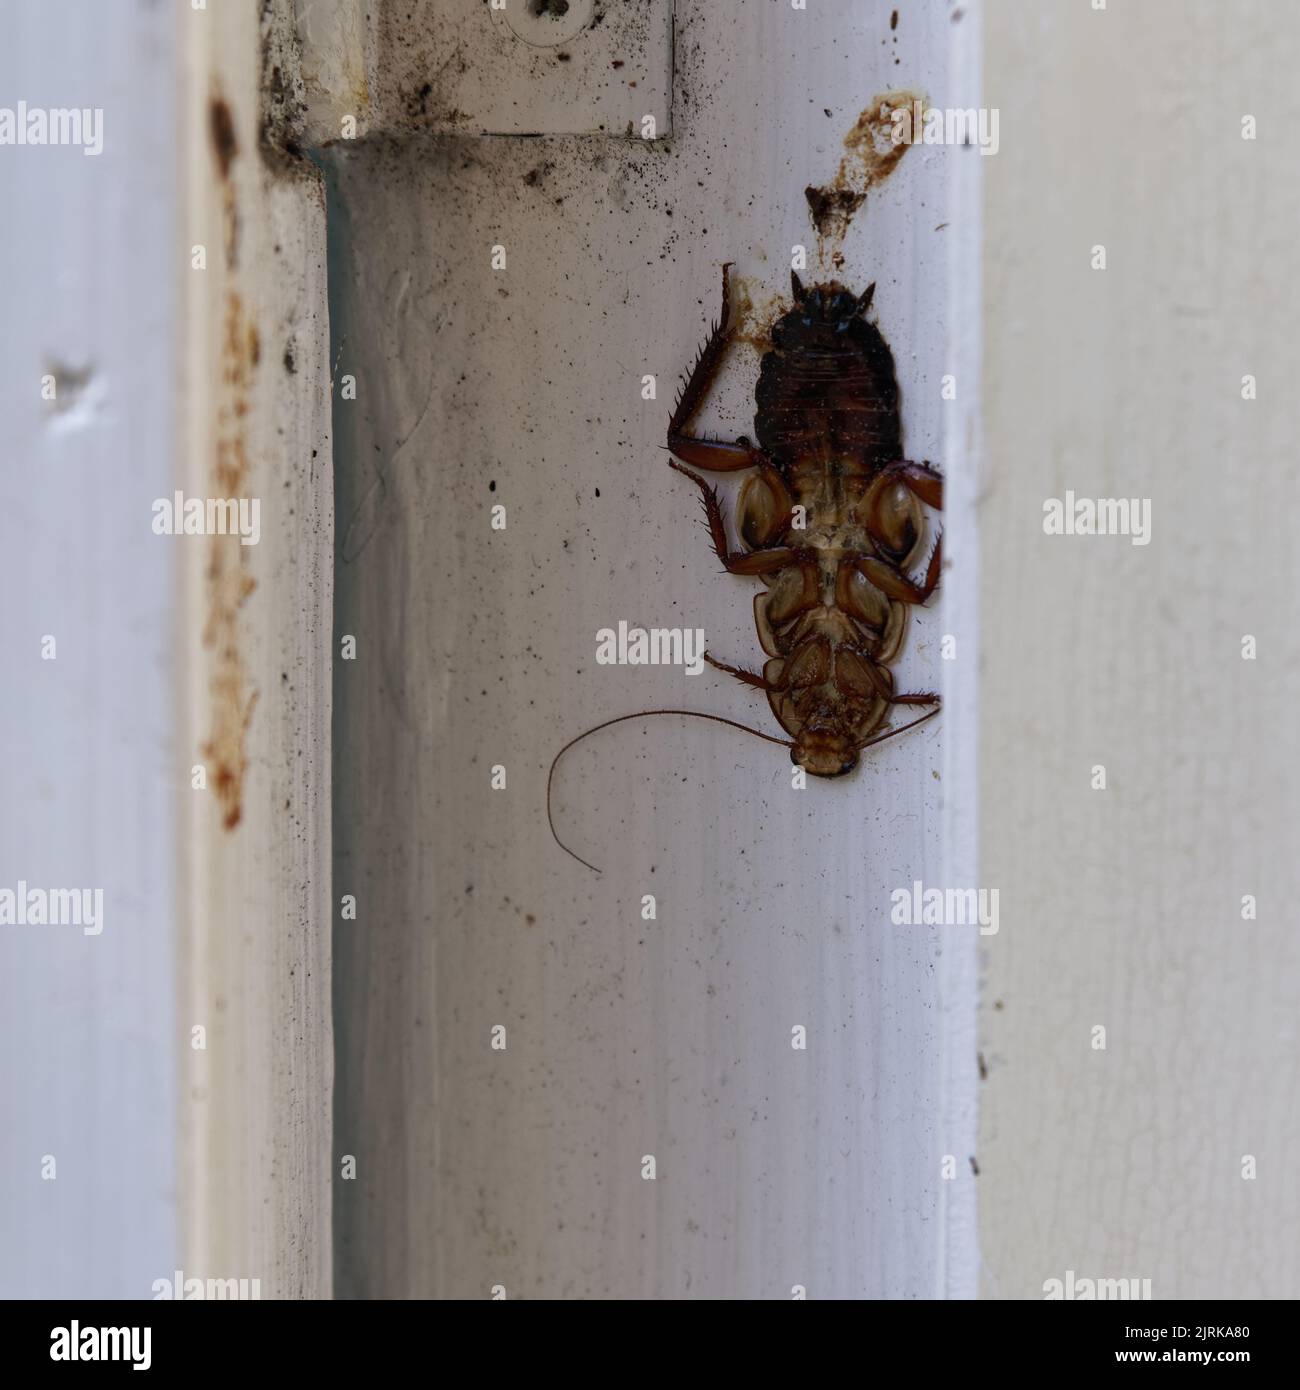 Un gisborne scarafaggio ha scelto un posto difettoso per dormire ed è stato accidentalmente schiacciato quando qualcuno ha aperto e chiuso la finestra. Foto Stock